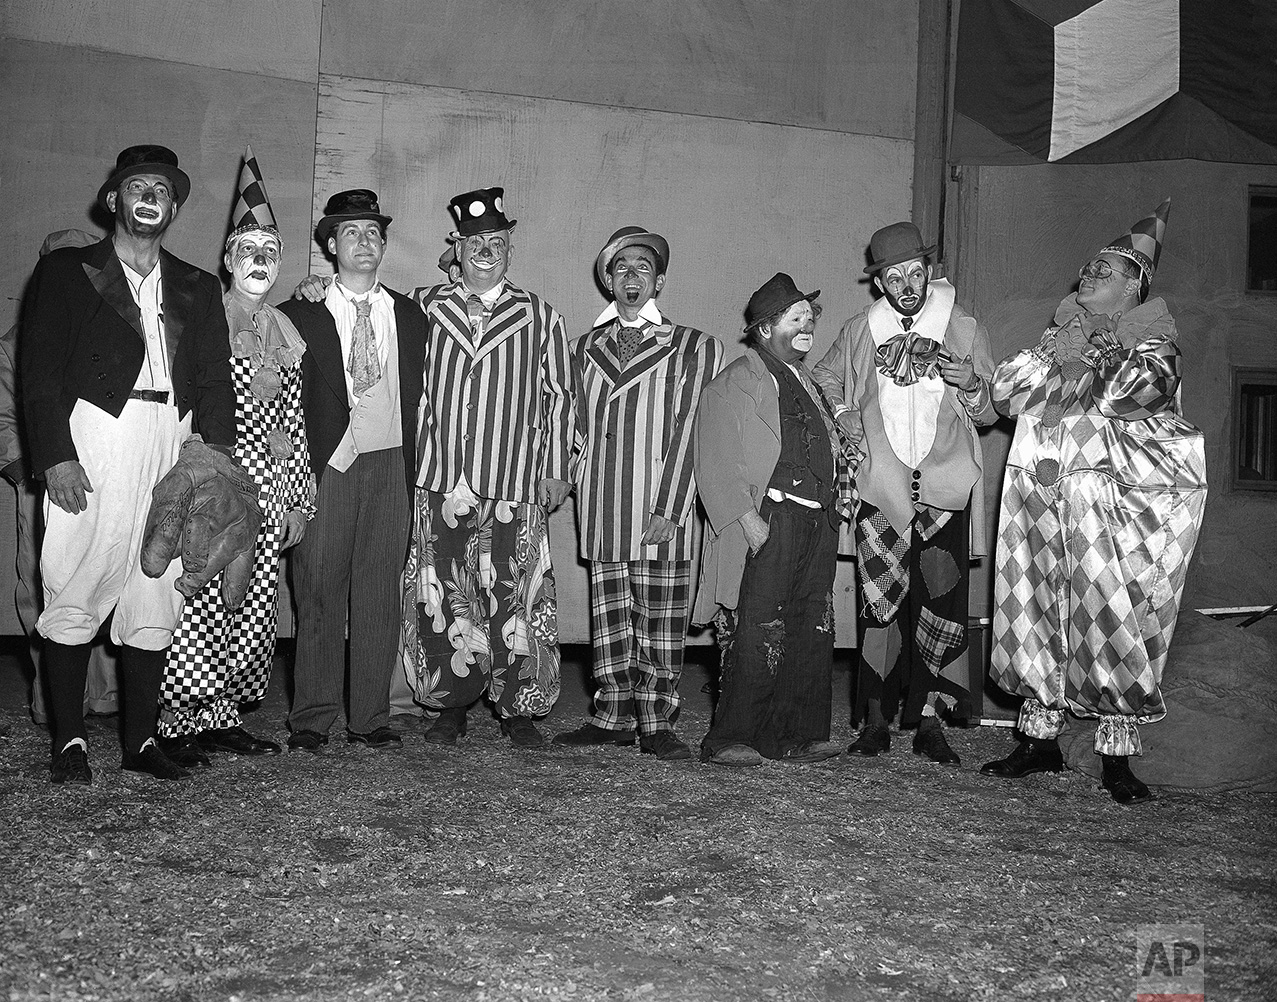 Circus Clowns 1953